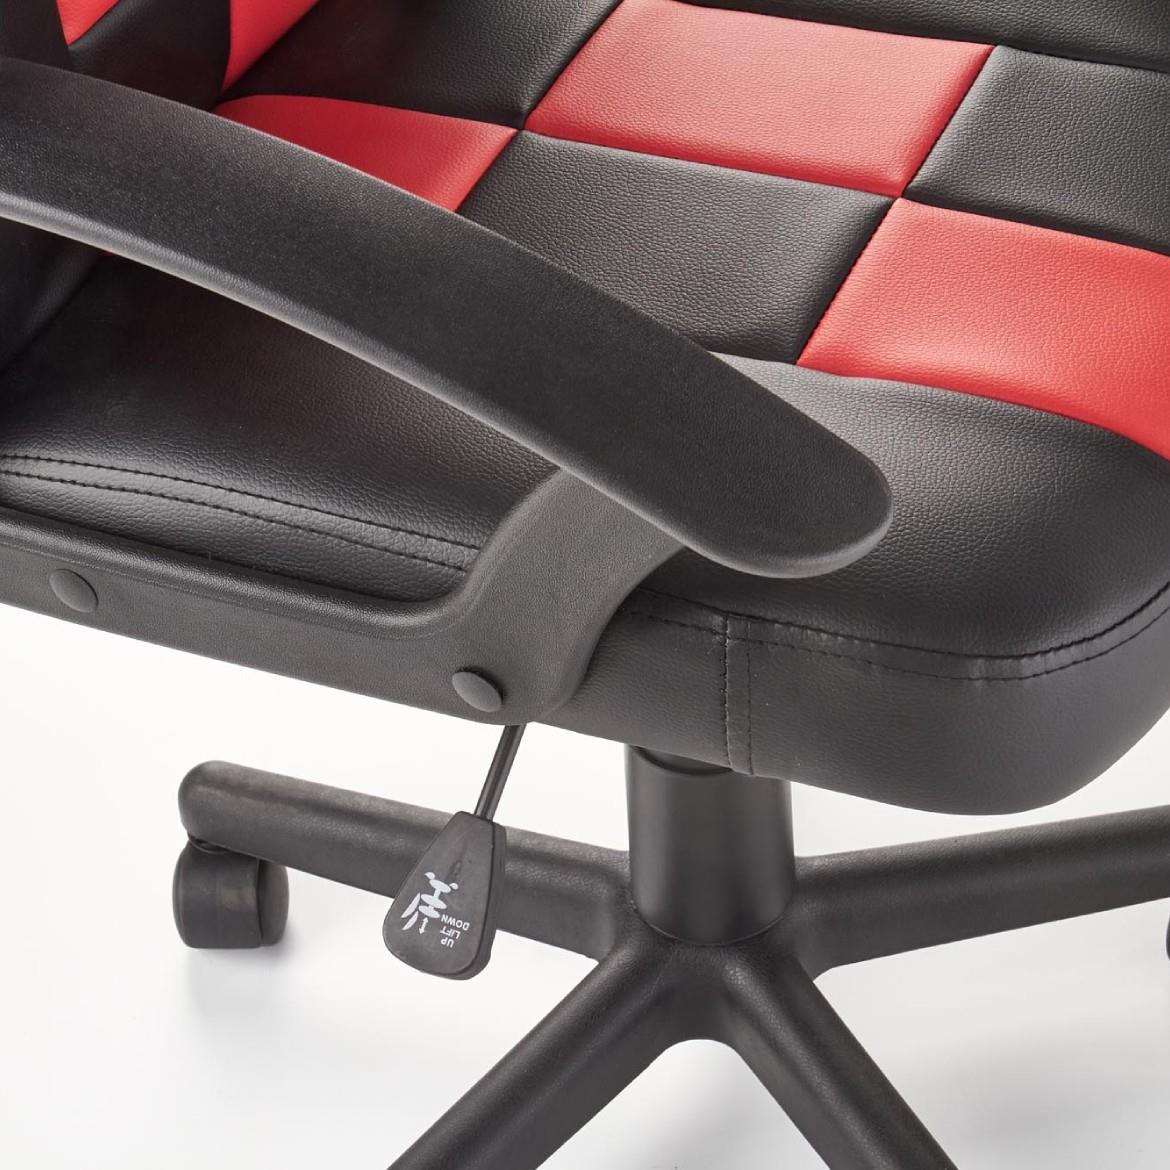 Storm kancelarijska stolica 56x50x105 cm crno/crvena